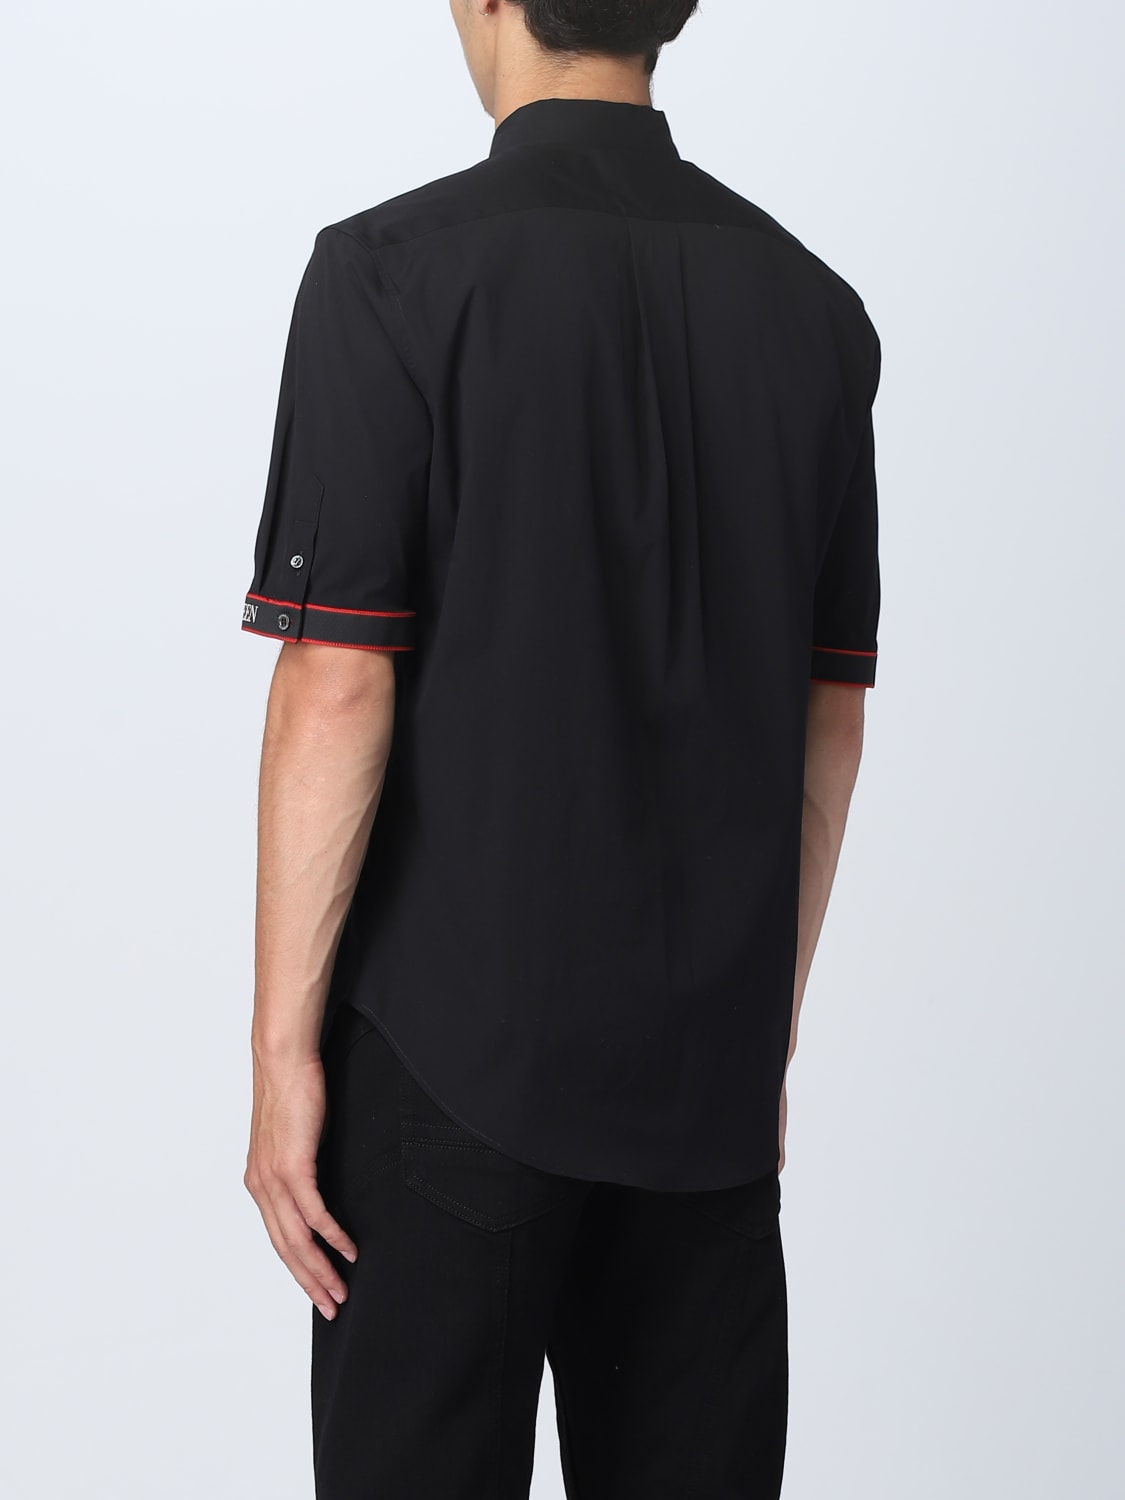 ALEXANDER MCQUEEN: shirt for man - Black | Alexander Mcqueen shirt ...